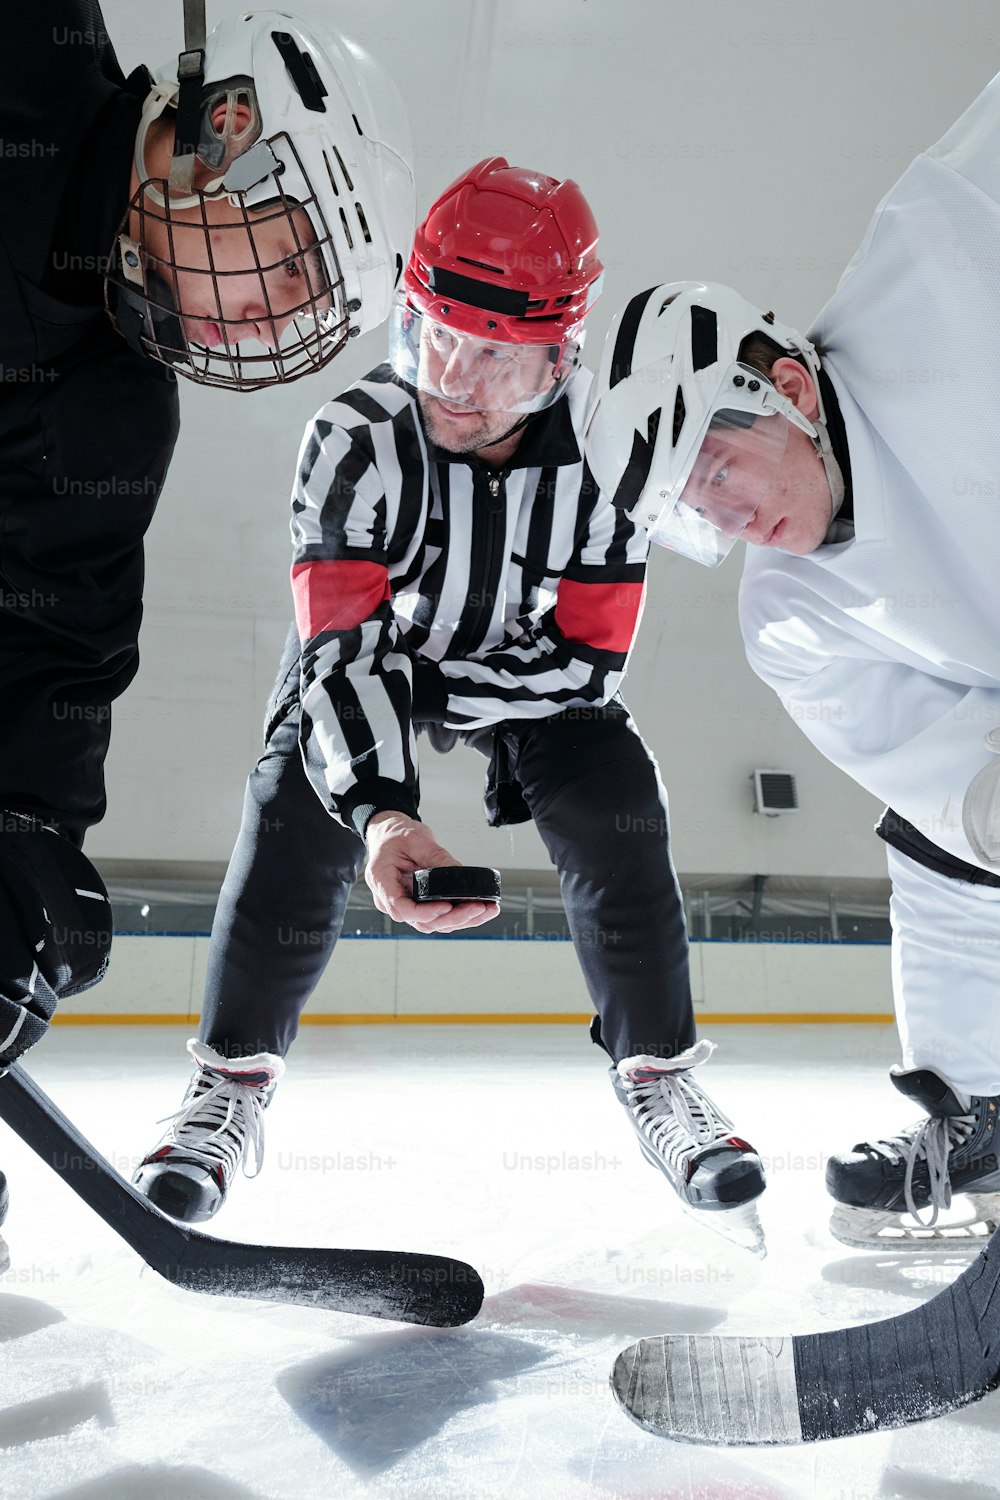 Árbitro de hockey sosteniendo el disco sobre la pista de hielo mientras dos rivales con palos lo miran mientras se preparan para dispararlo durante el entrenamiento